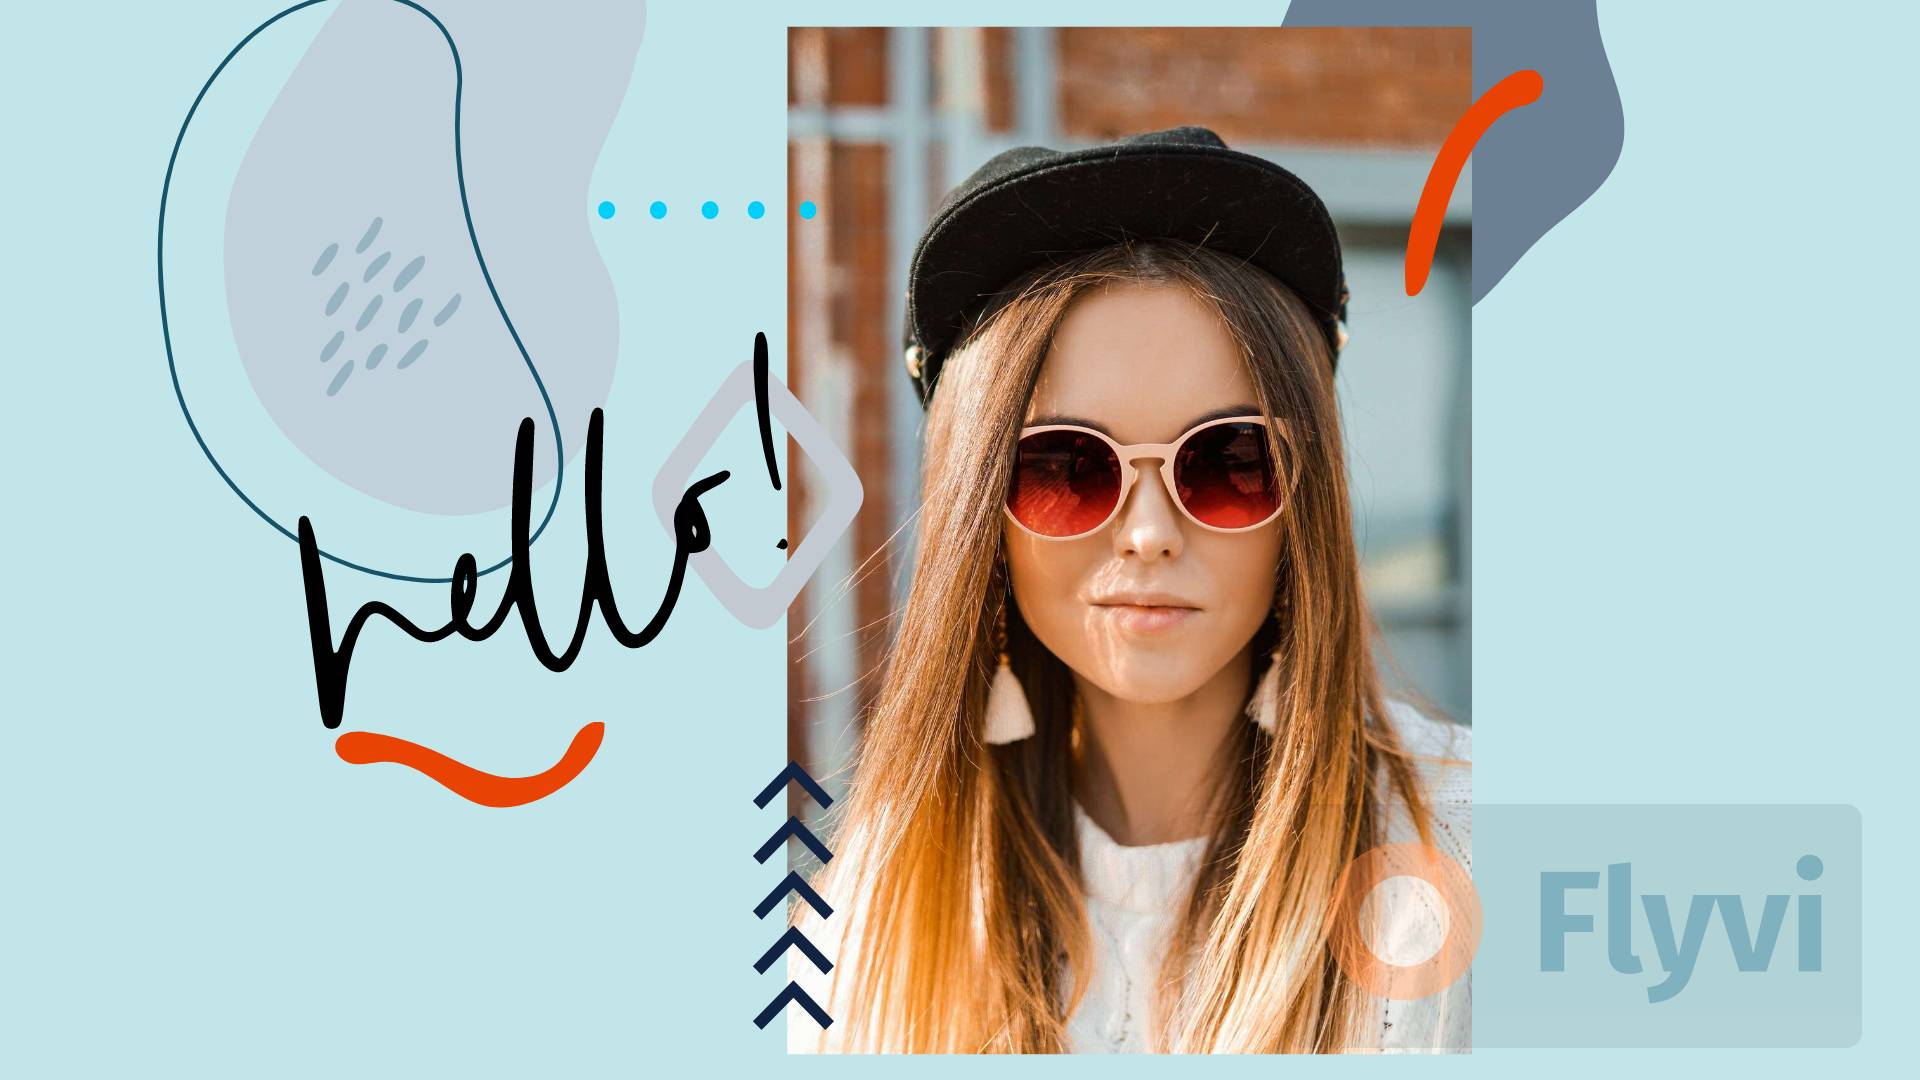 Приветственный ярко-голубой пост портретом девушки в солнечных очках и кепке и рукописным шрифтом и узорами